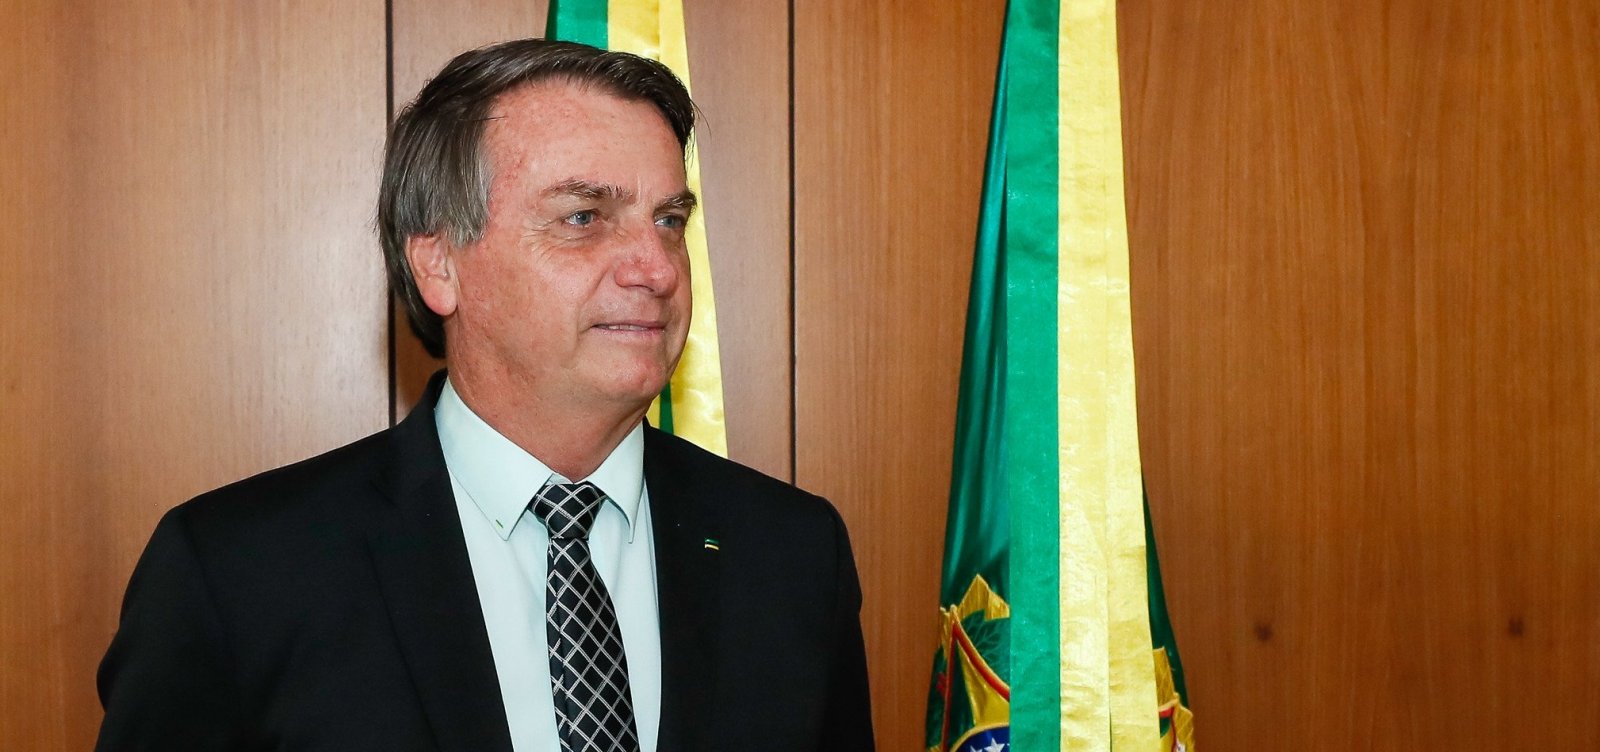 MP pede ao TCU para apurar se Bolsonaro usou governo para favorecer o filho